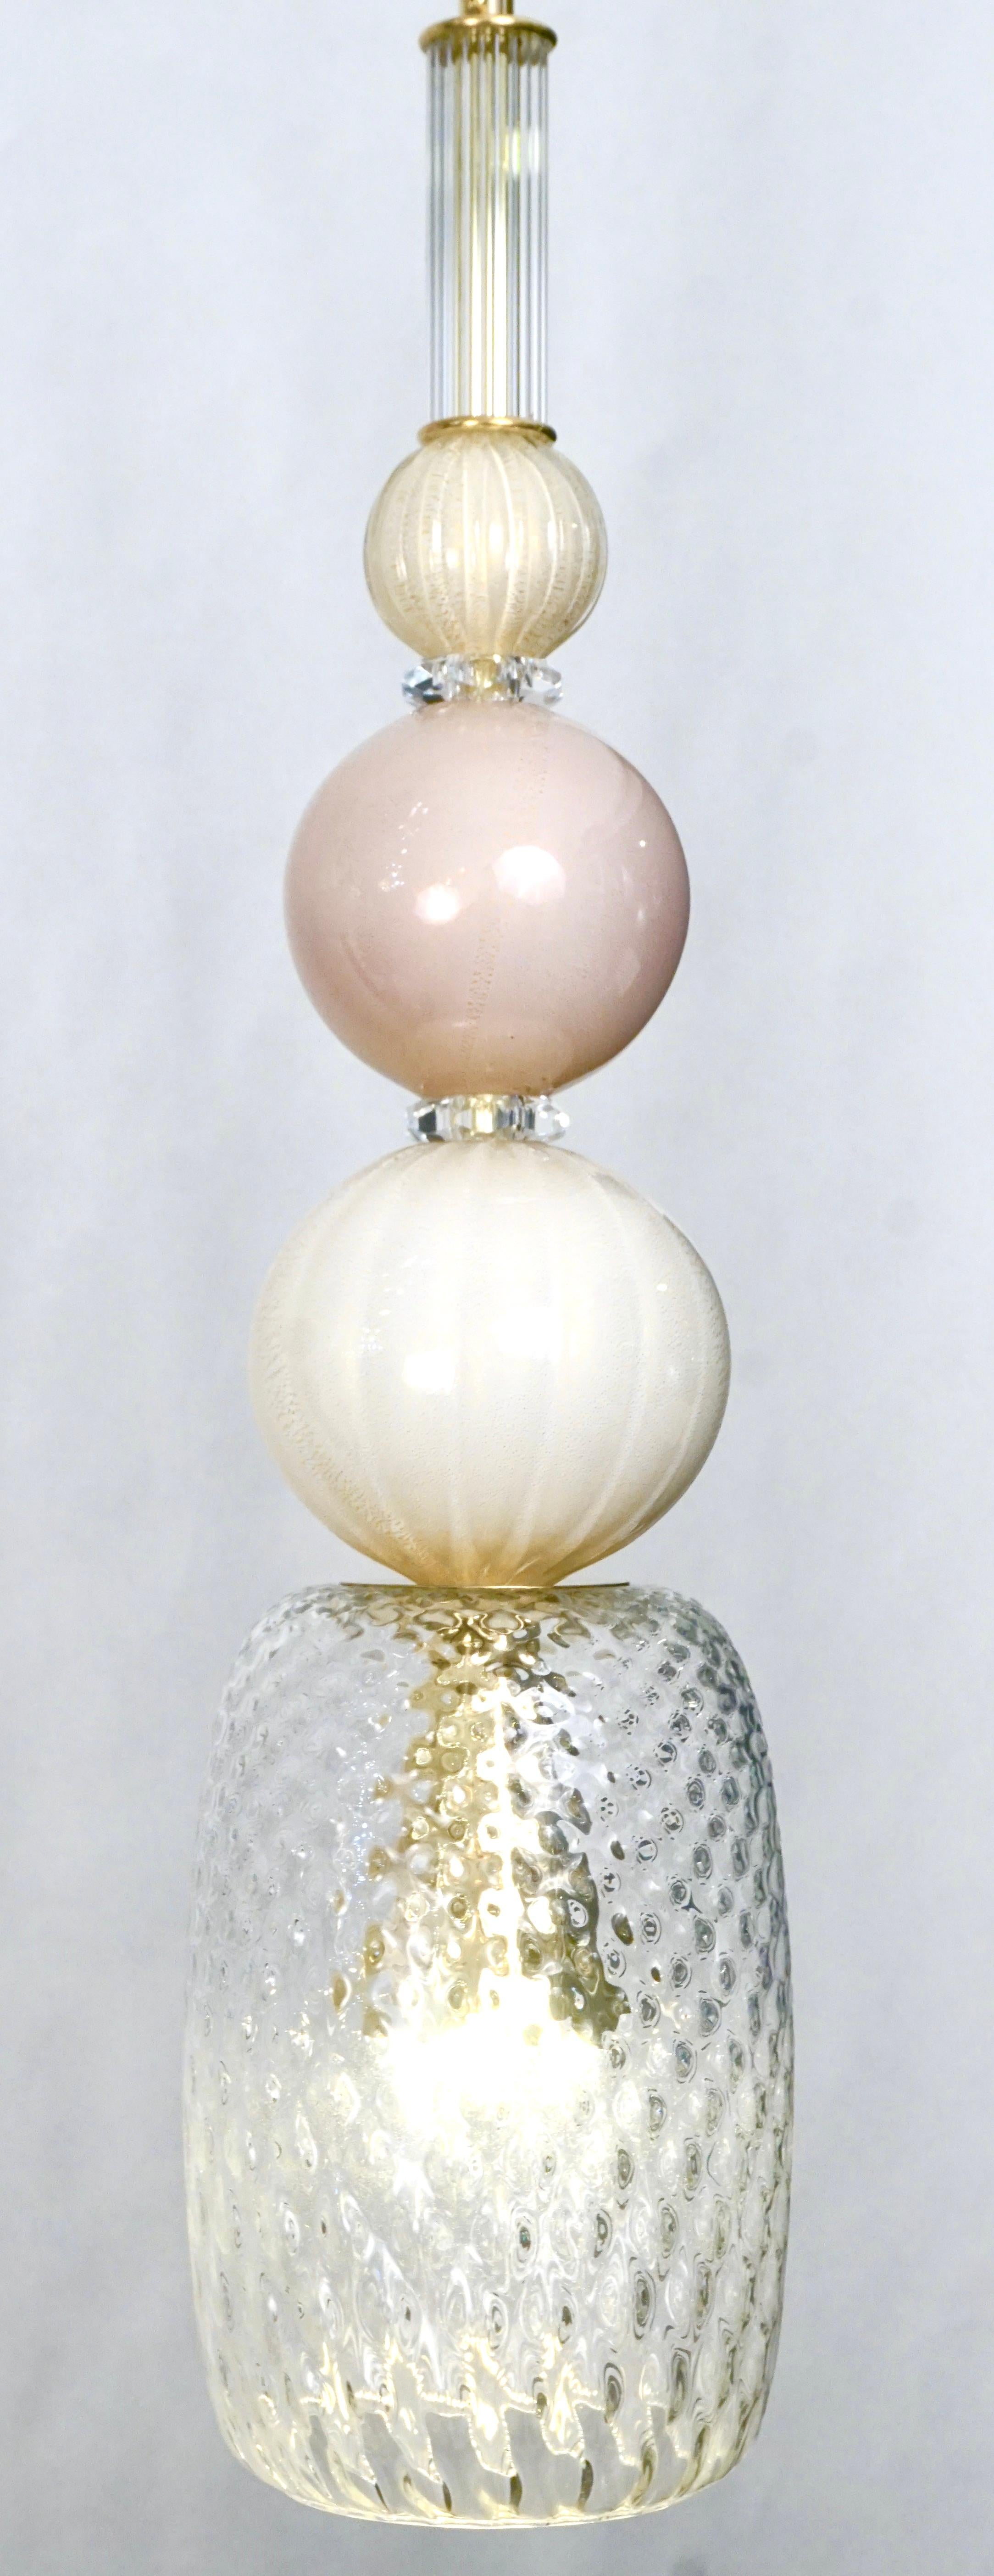 L'amusant et élégant lustre-lanterne italien, entièrement fabriqué à la main, de conception organique moderne, composé d'une succession d'éléments : cylindre en verre de Murano en cristal anglés, sphères en verre opalin rose blush et blanc ivoire